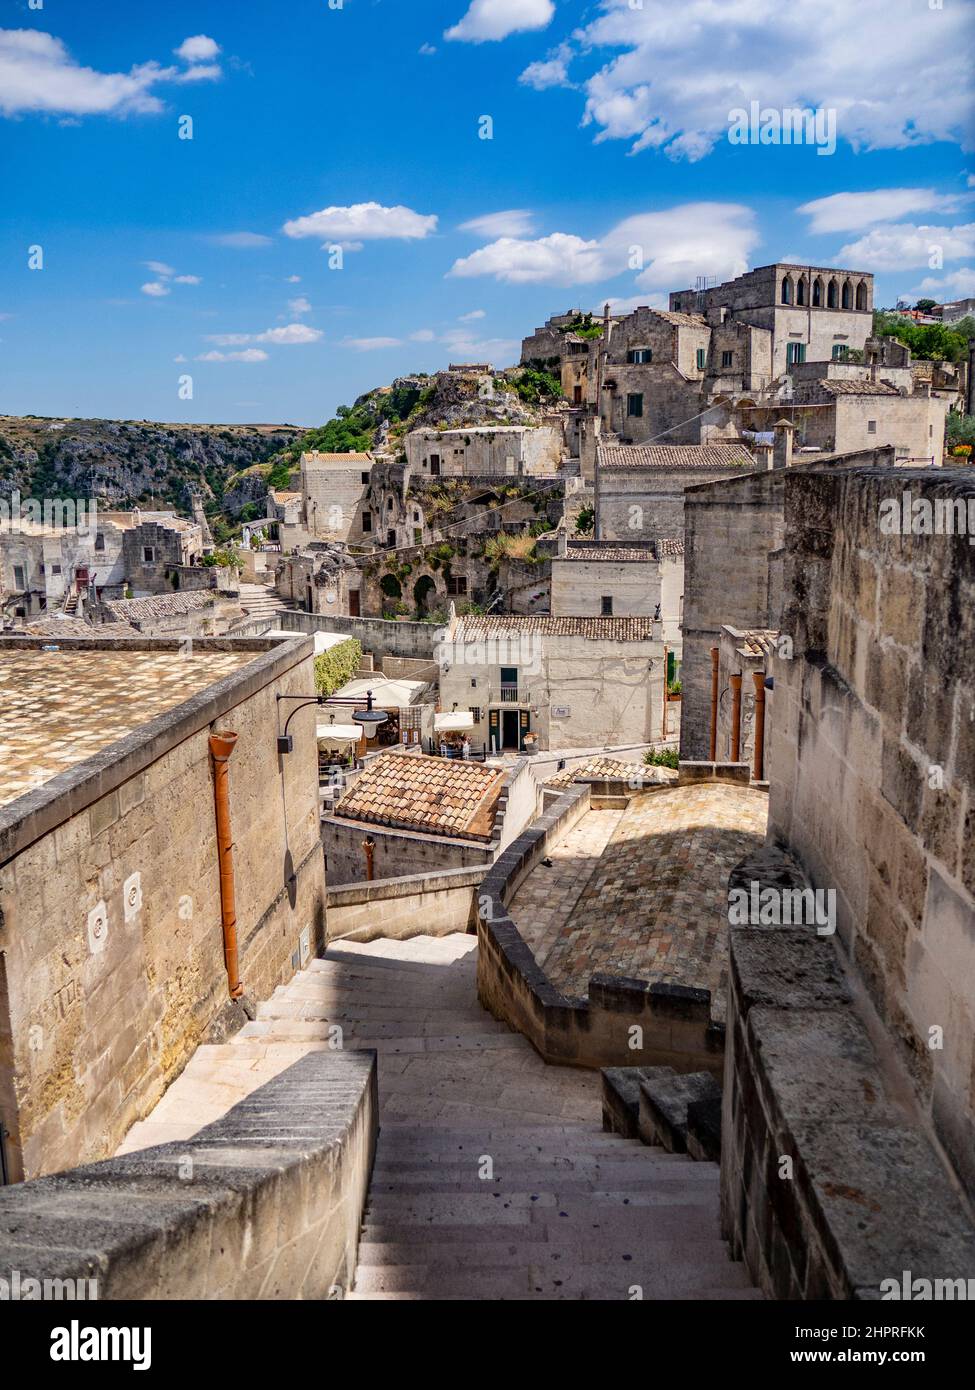 L'Italie, la Basilicate, Matera, vue de la vieille ville Banque D'Images